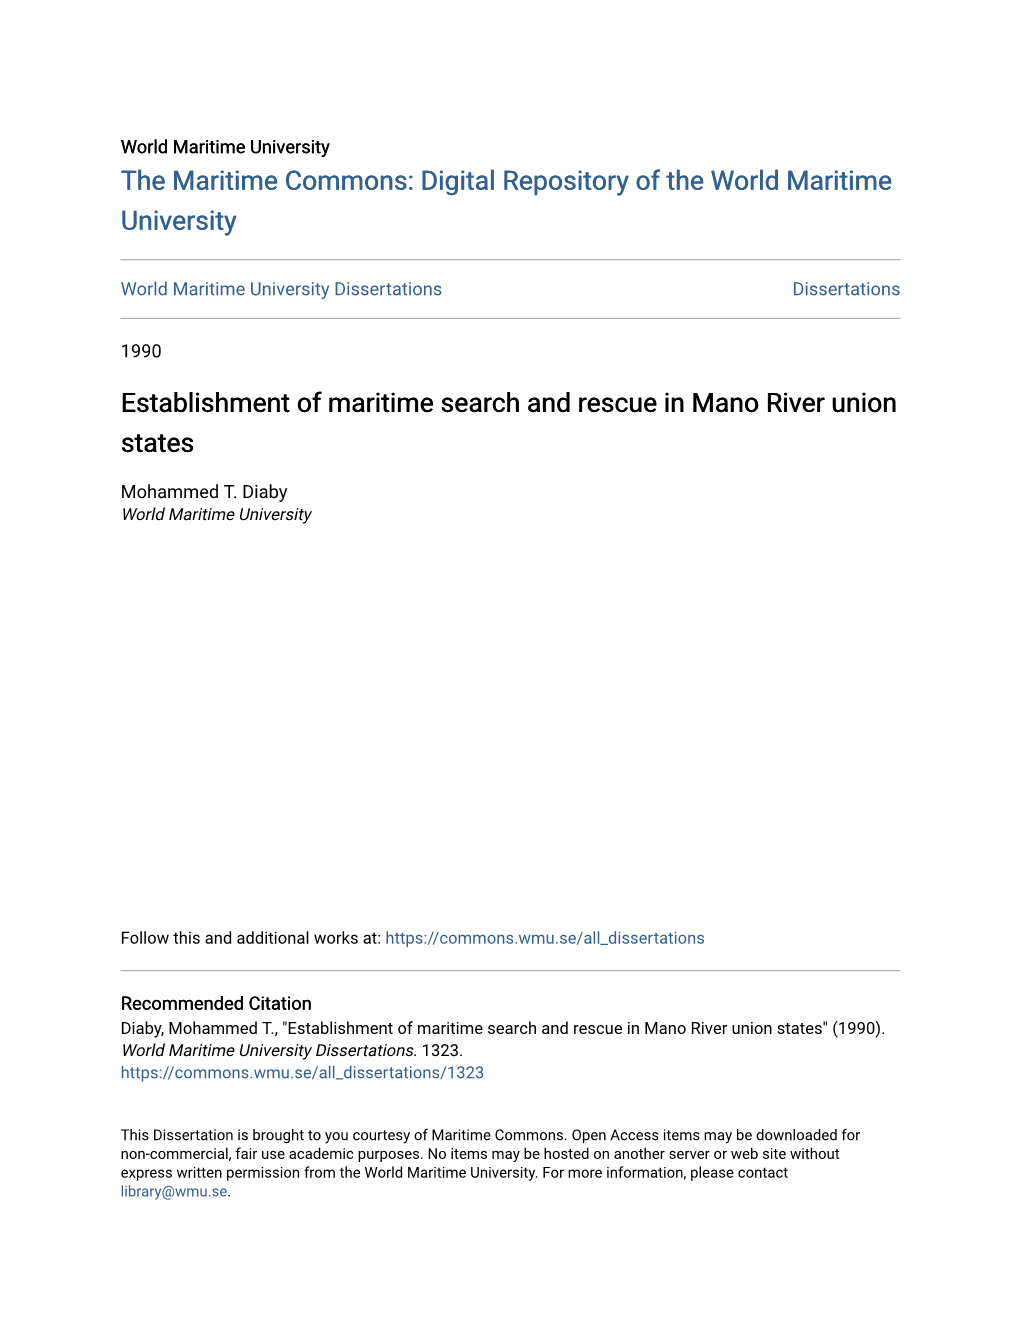 Establishment of Maritime Search and Rescue in Mano River Union States